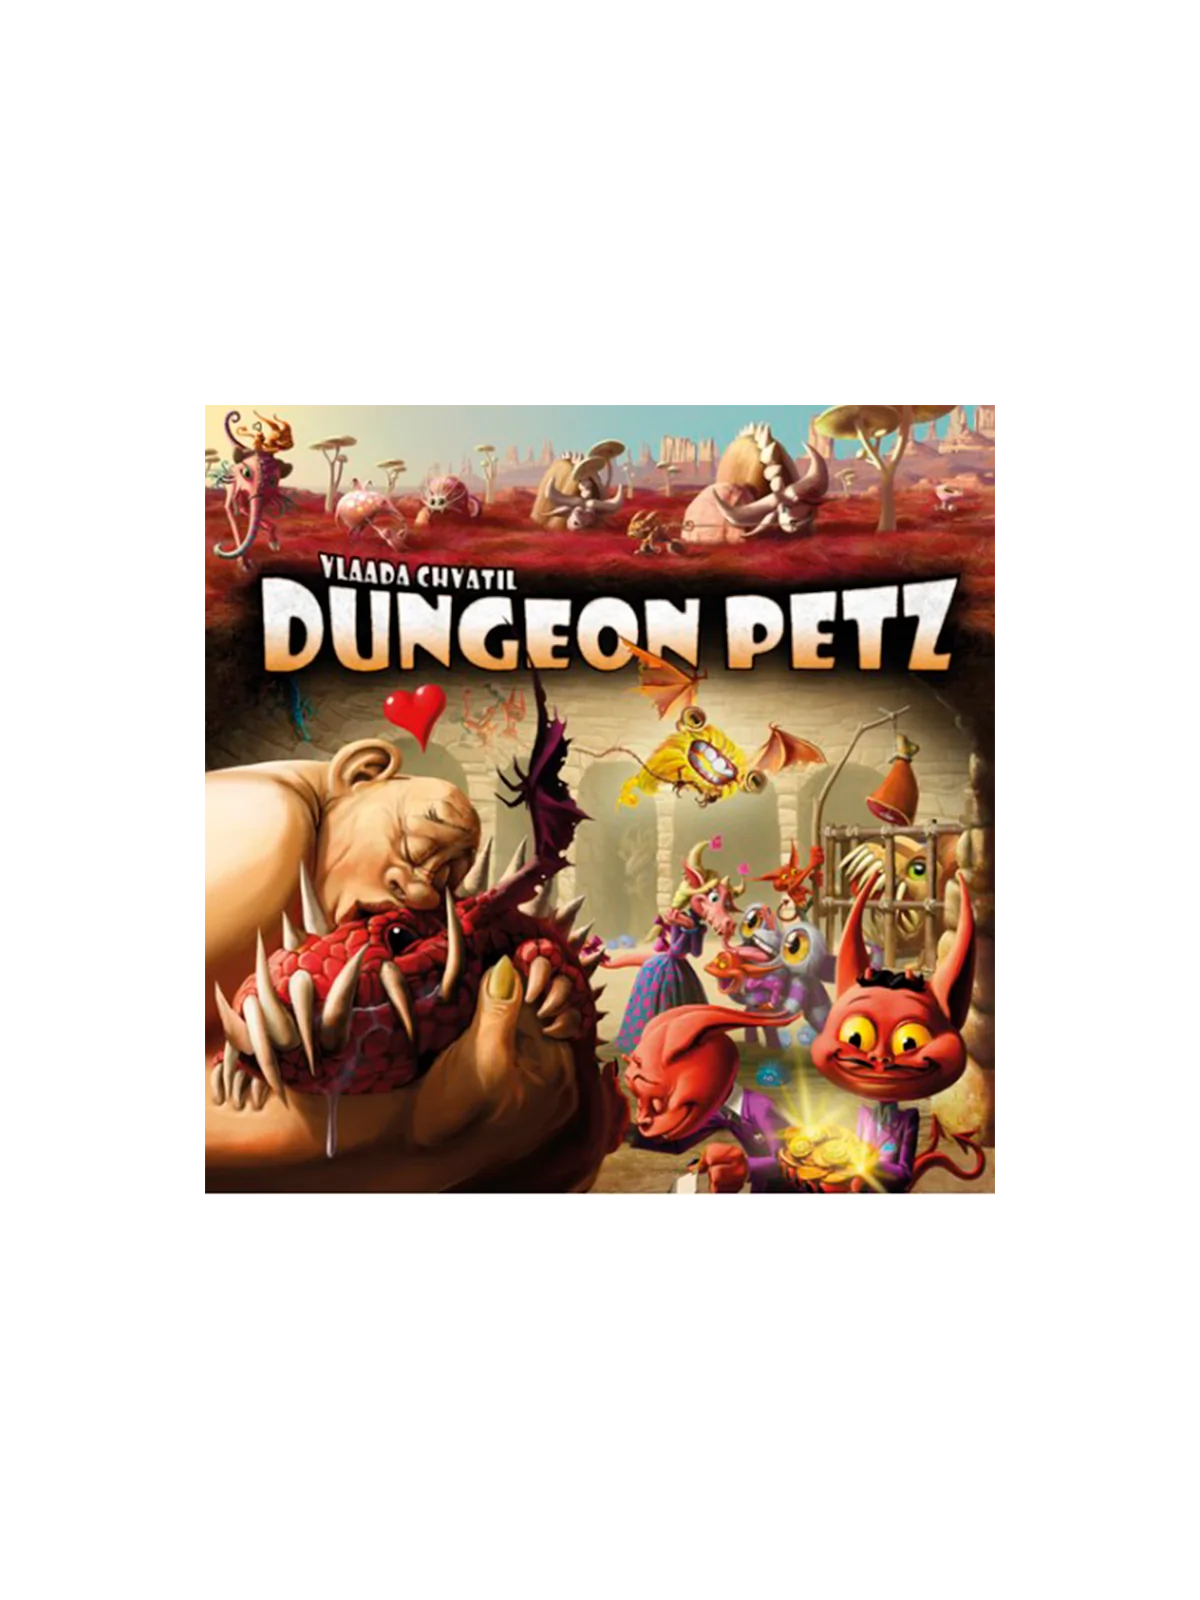 Comprar Dungeon Petz (Inglés) barato al mejor precio 35,96 € de CGE